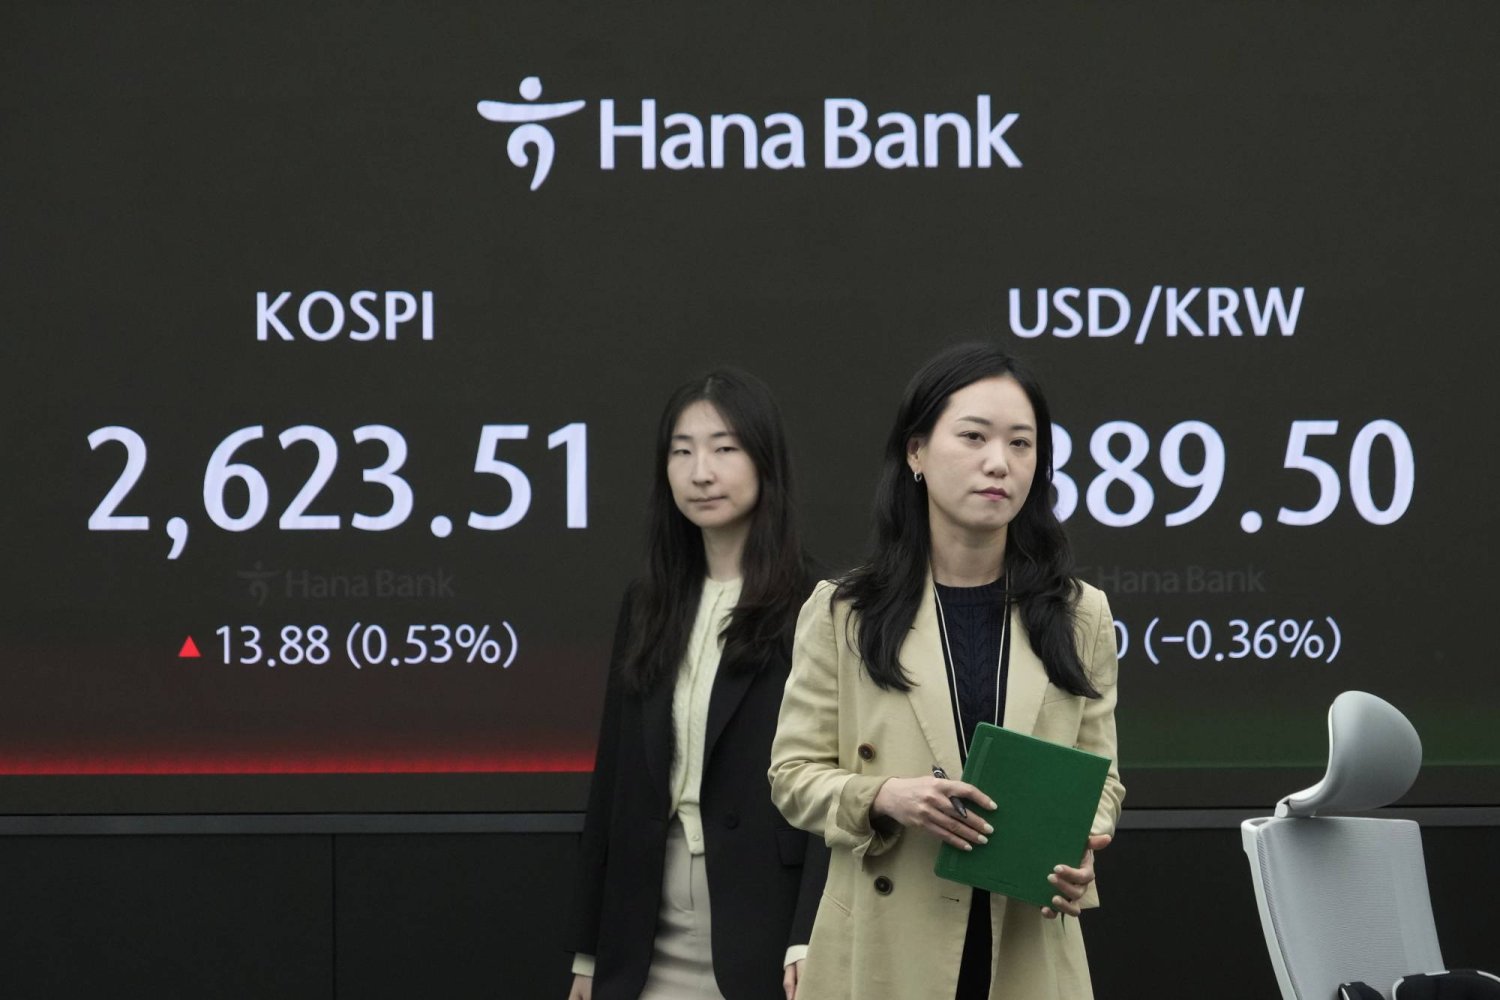 سيدتان تمرَّان أمام لوحة إلكترونية تعرض تحركات الأسهم والعملات في العاصمة الكورية الجنوبية سيول (أ.ب)